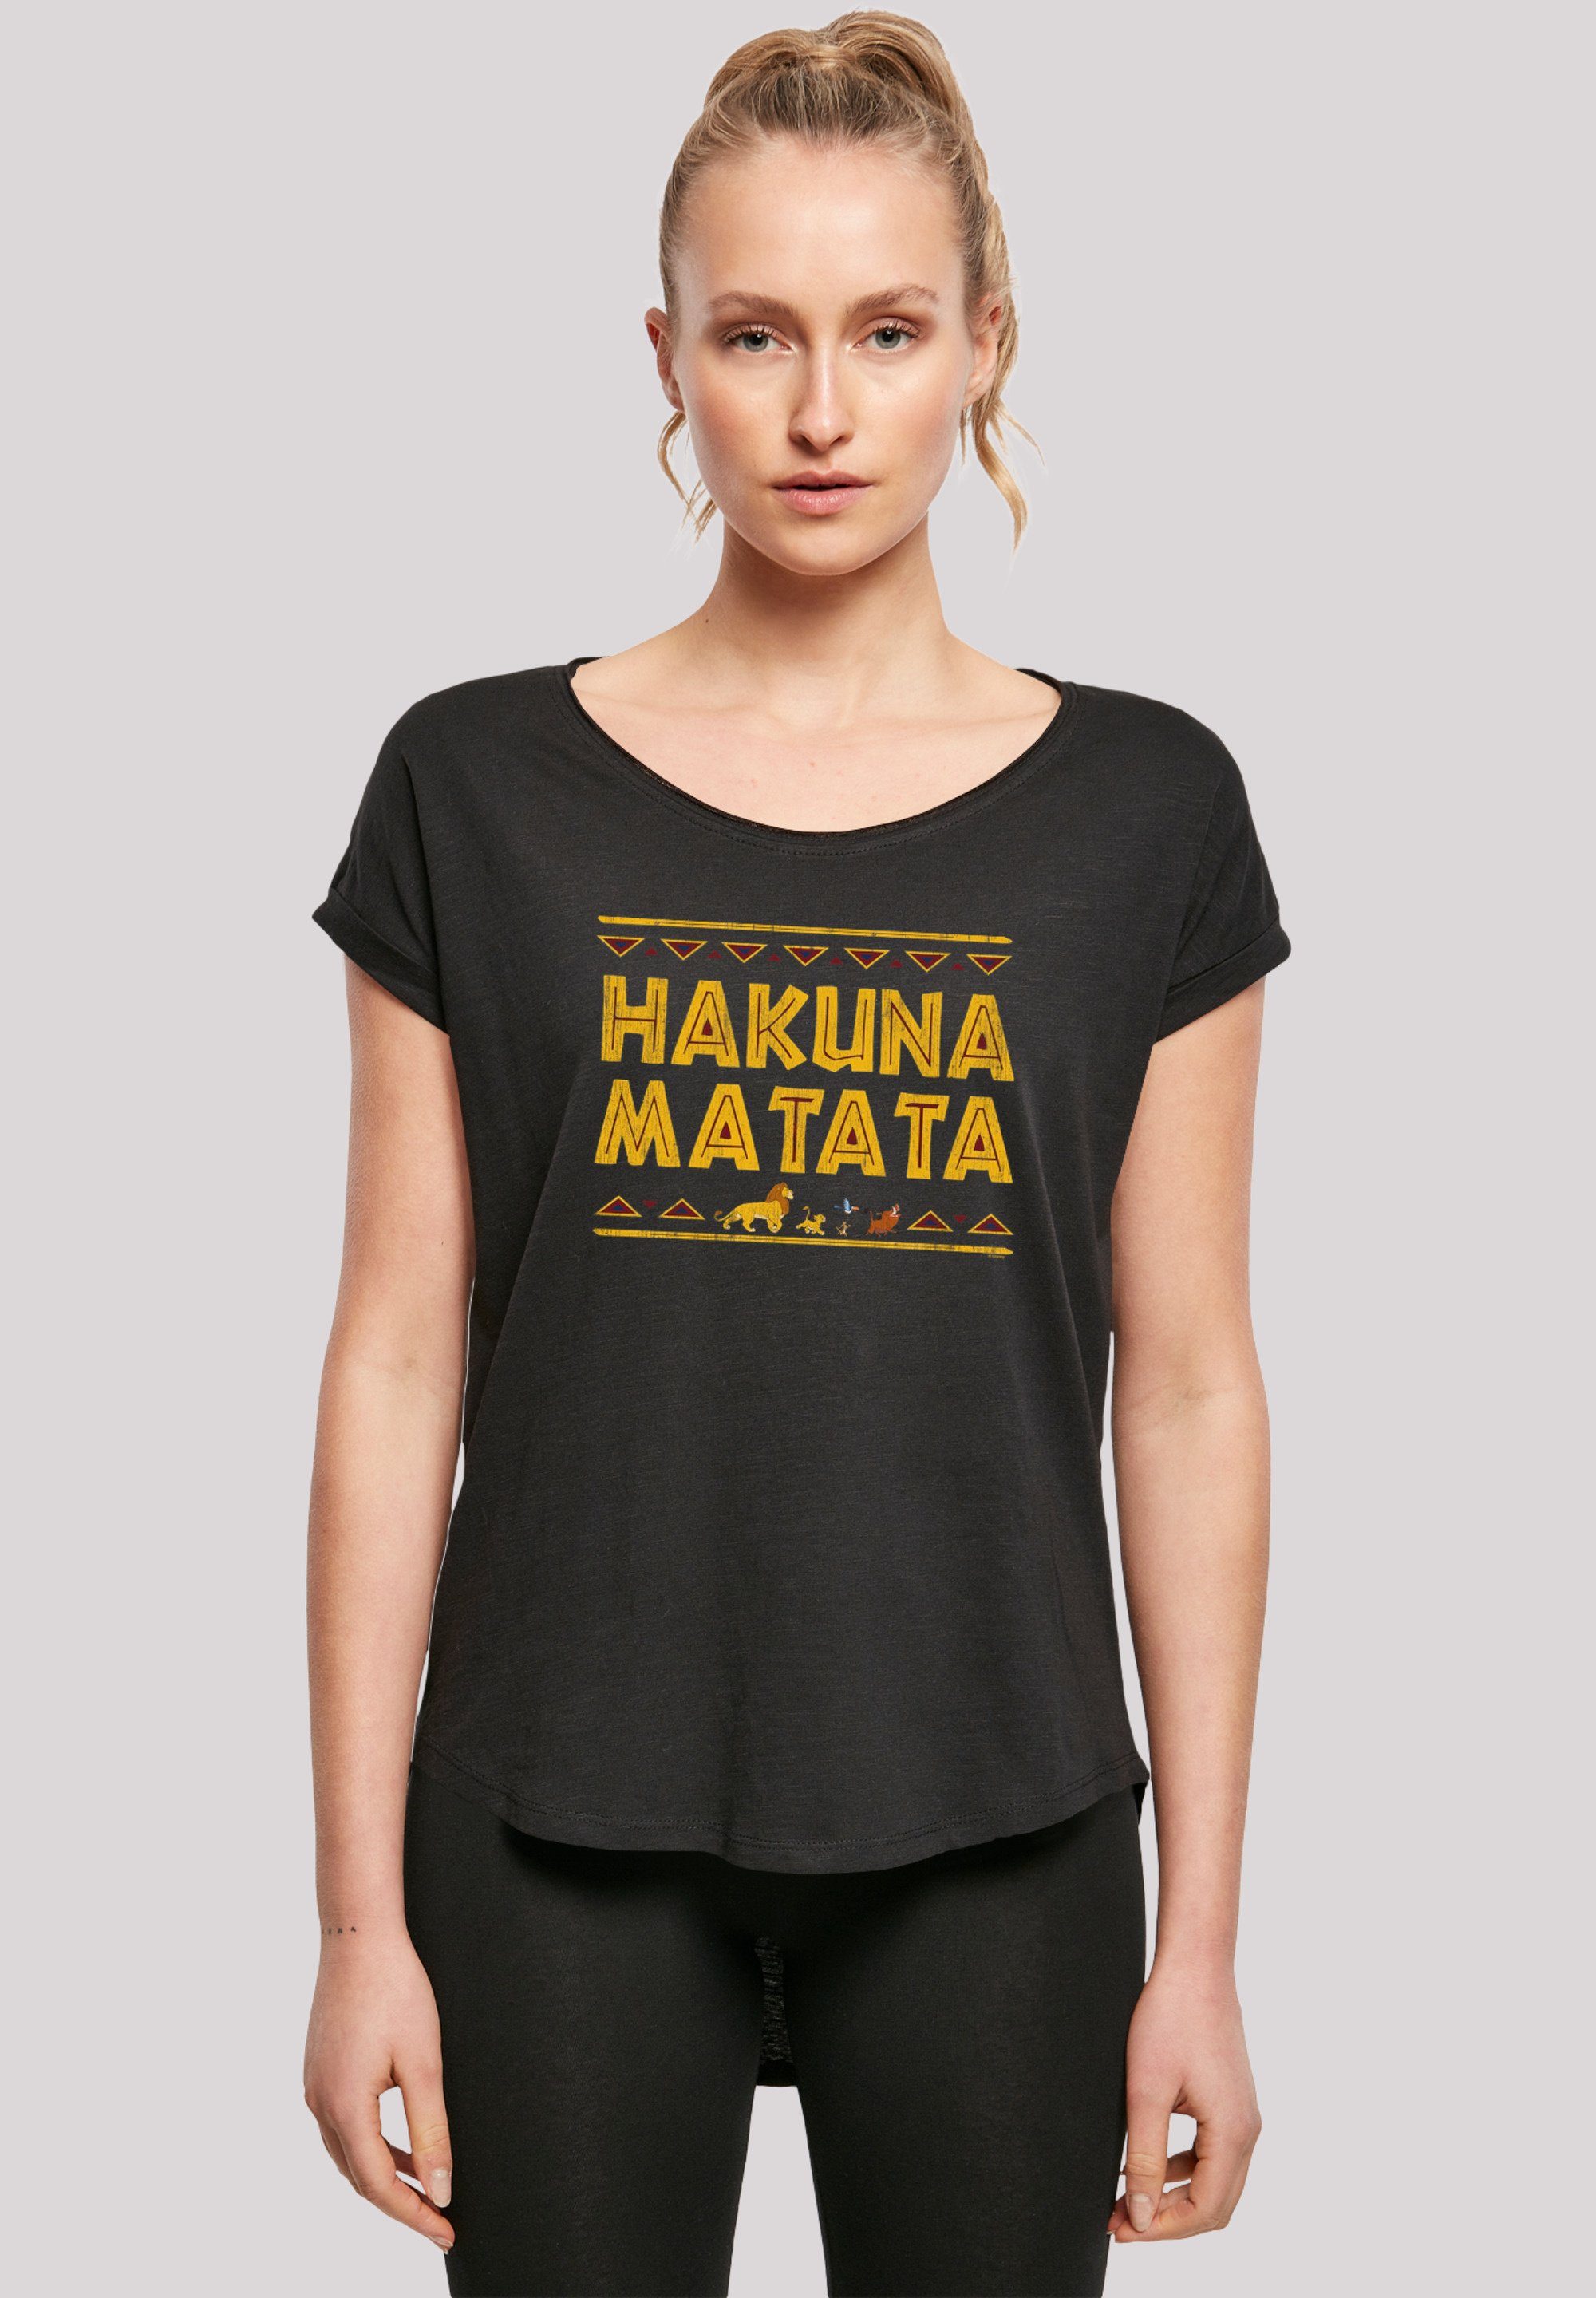 Damen Hinten Print, König T-Shirt lang der Matata F4NT4STIC Löwen extra T-Shirt geschnittenes Hakuna